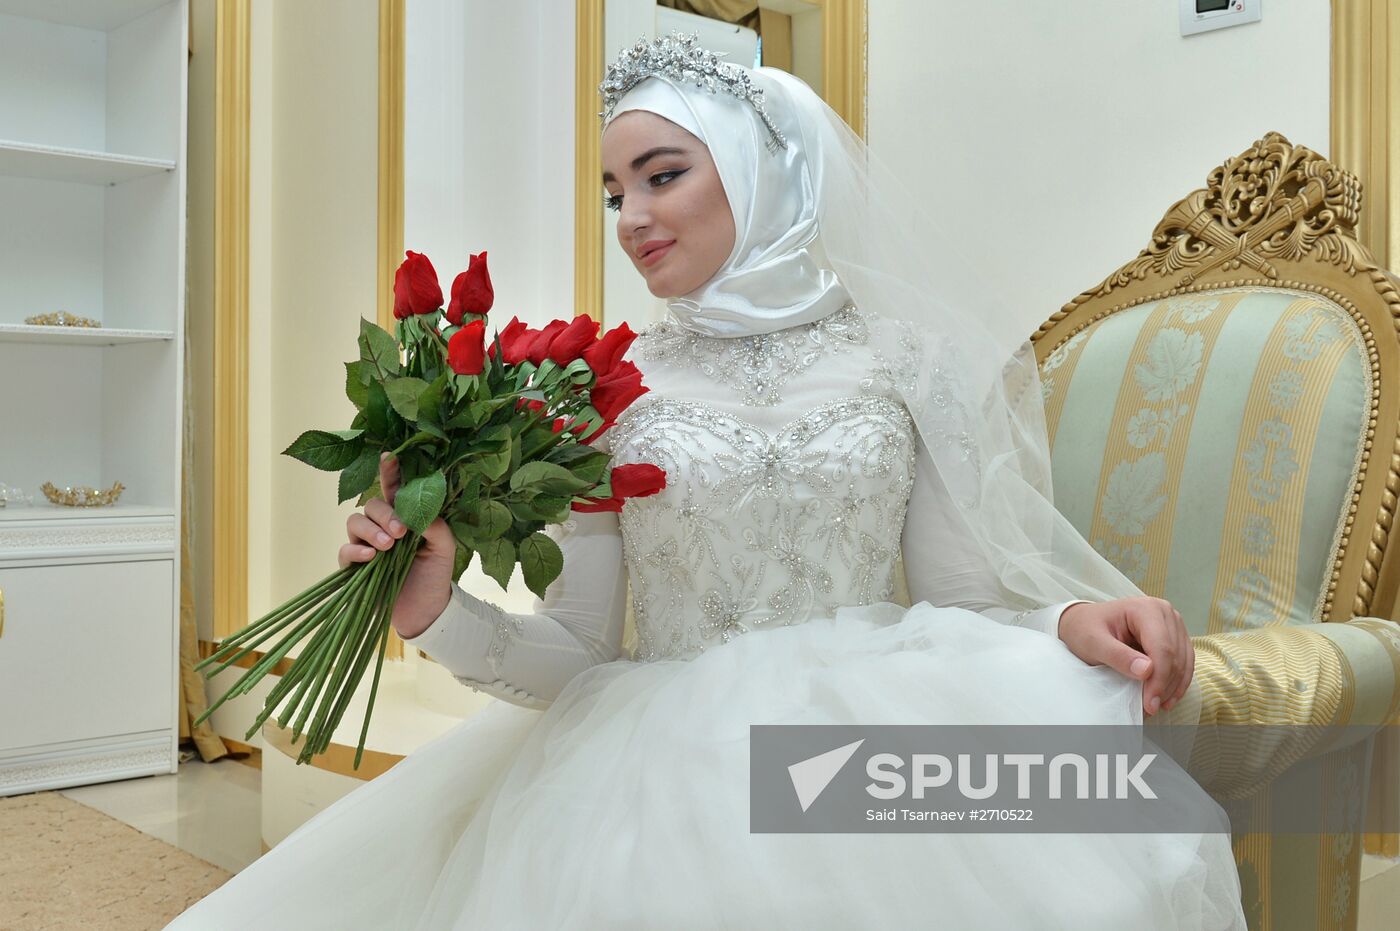 Wedding salons in Grozny